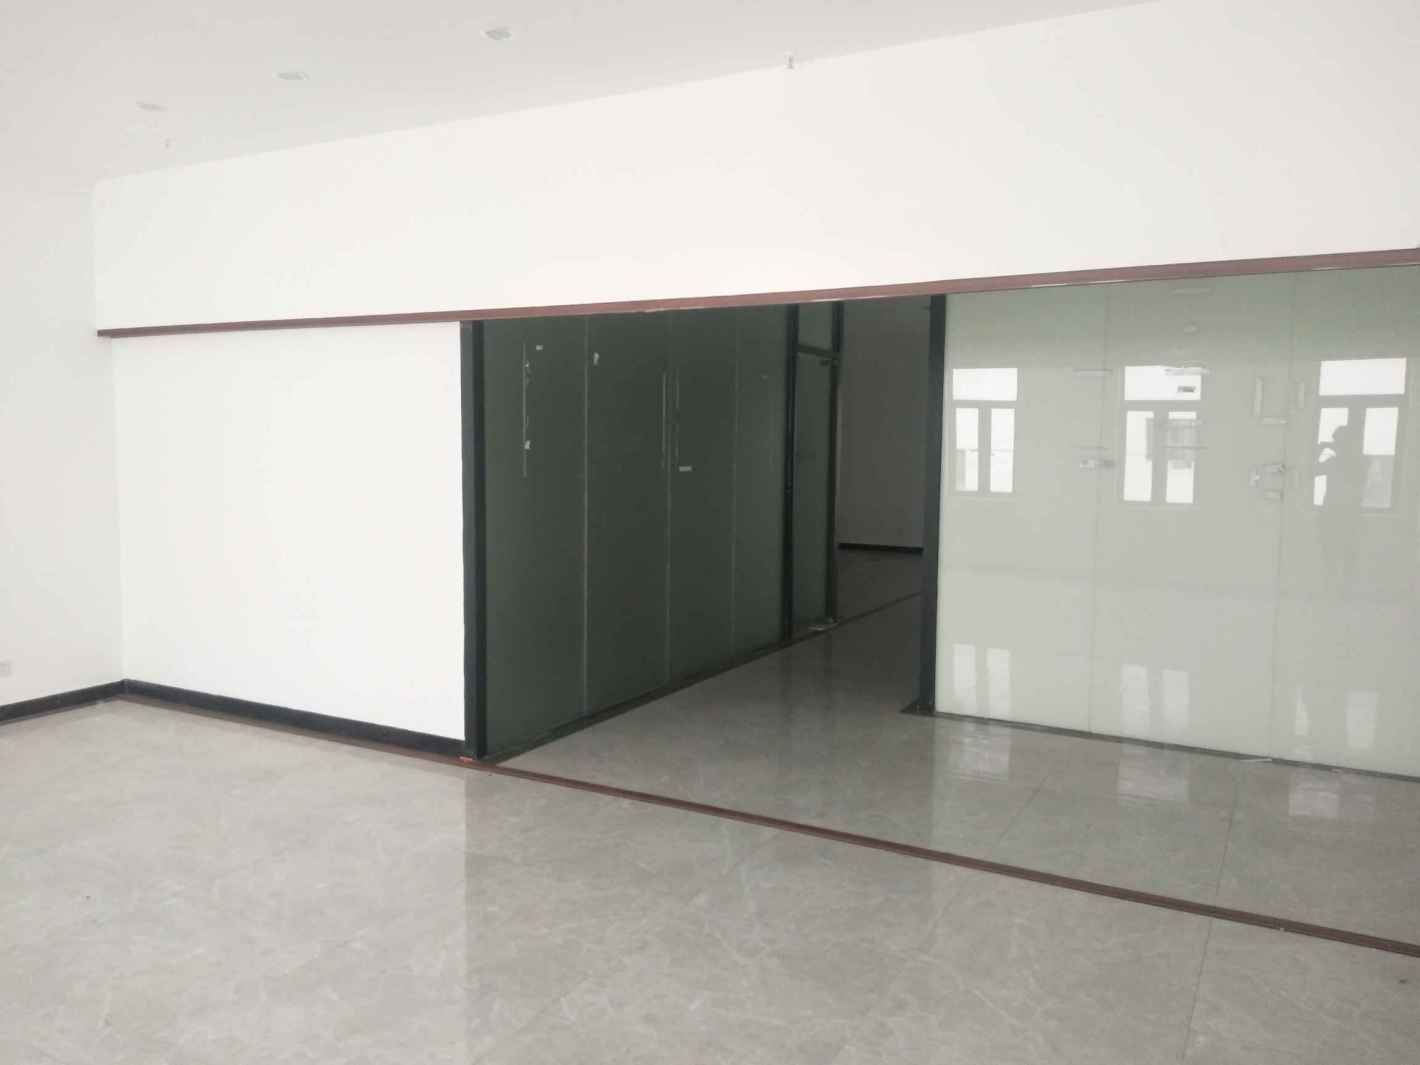 华生创谷文化产业园172平米办公室出租-租金价格2.43元/m²/天